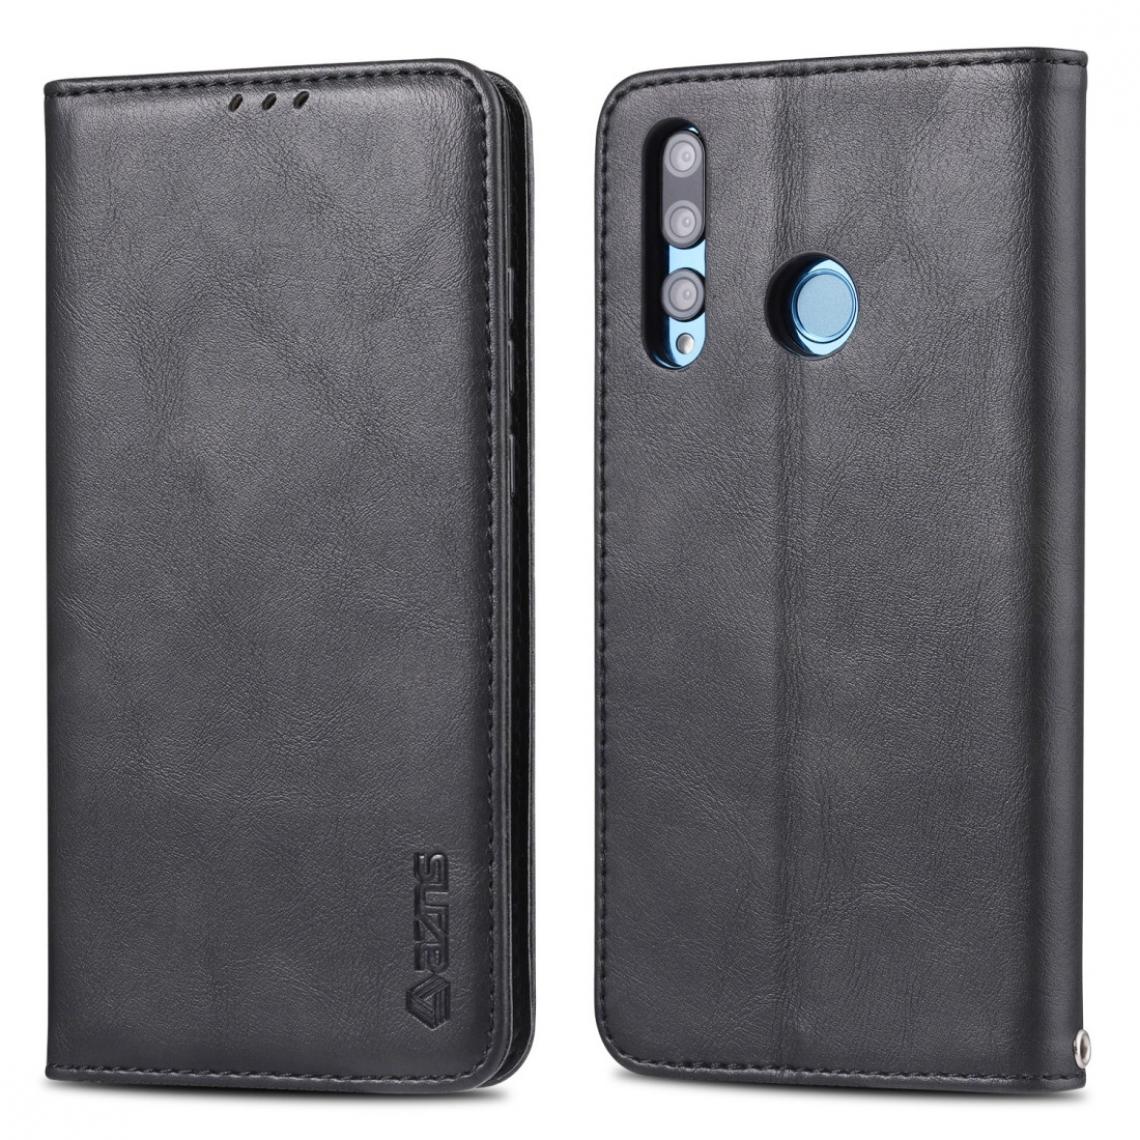 Wewoo - Housse Coque Pour Huawei P Smart Plus 2019 AZNS Texture rétro Magnétique Flip horizontal en cuir PU avec support et fentes cartes et cadre photo noir - Coque, étui smartphone